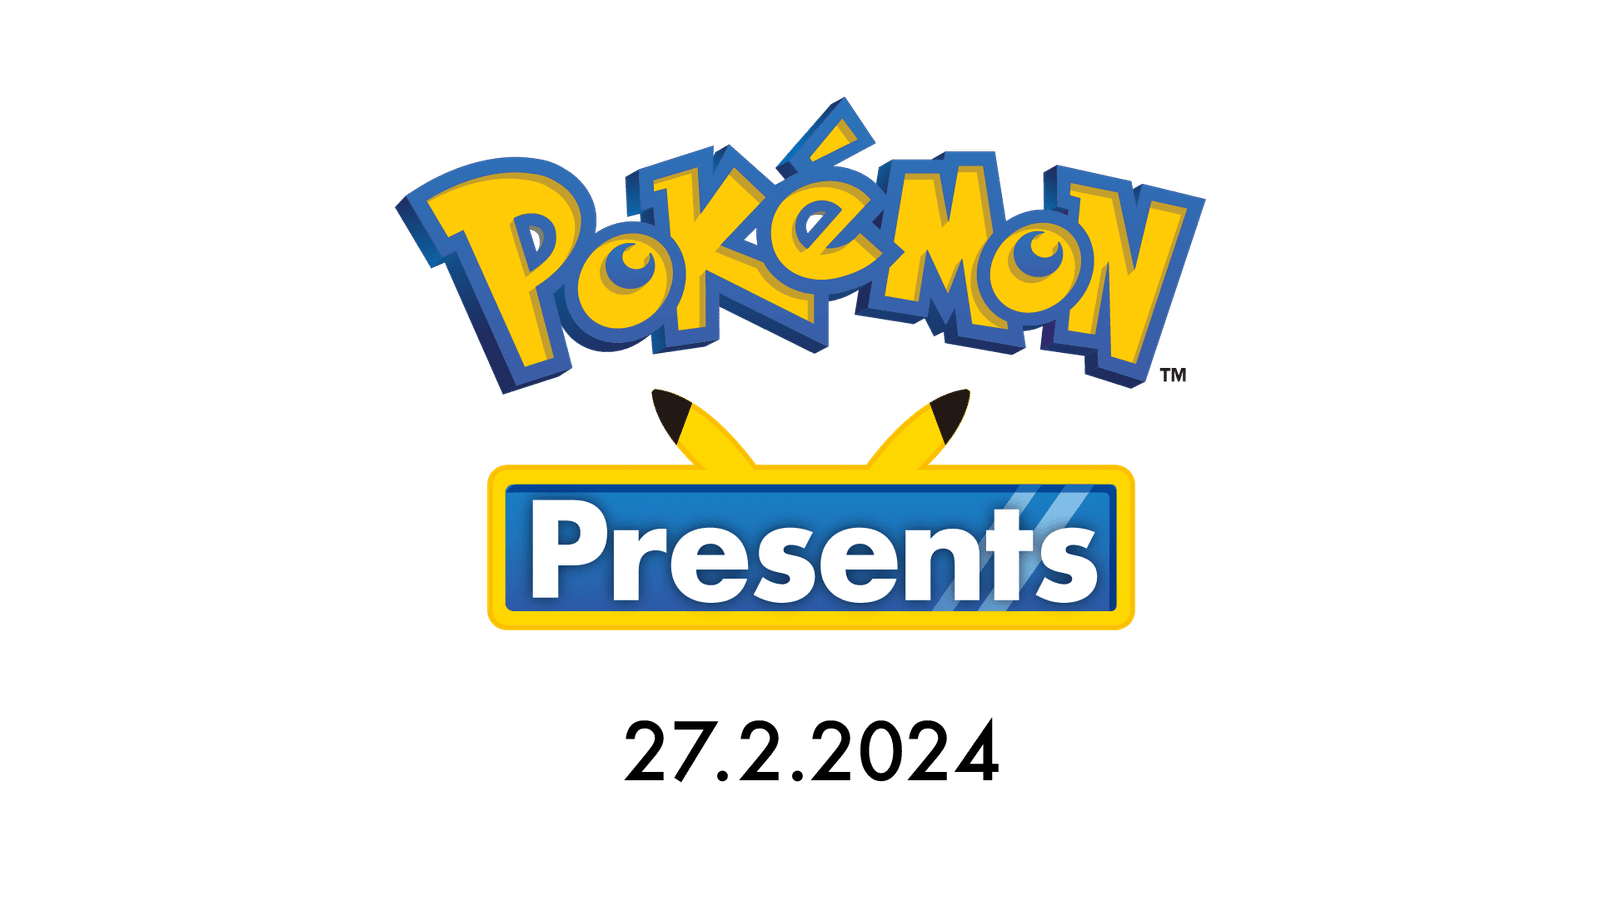 Pokémon Presents révèle les futures sorties de l’univers Pokémon: le récapitulatif de l’évènement